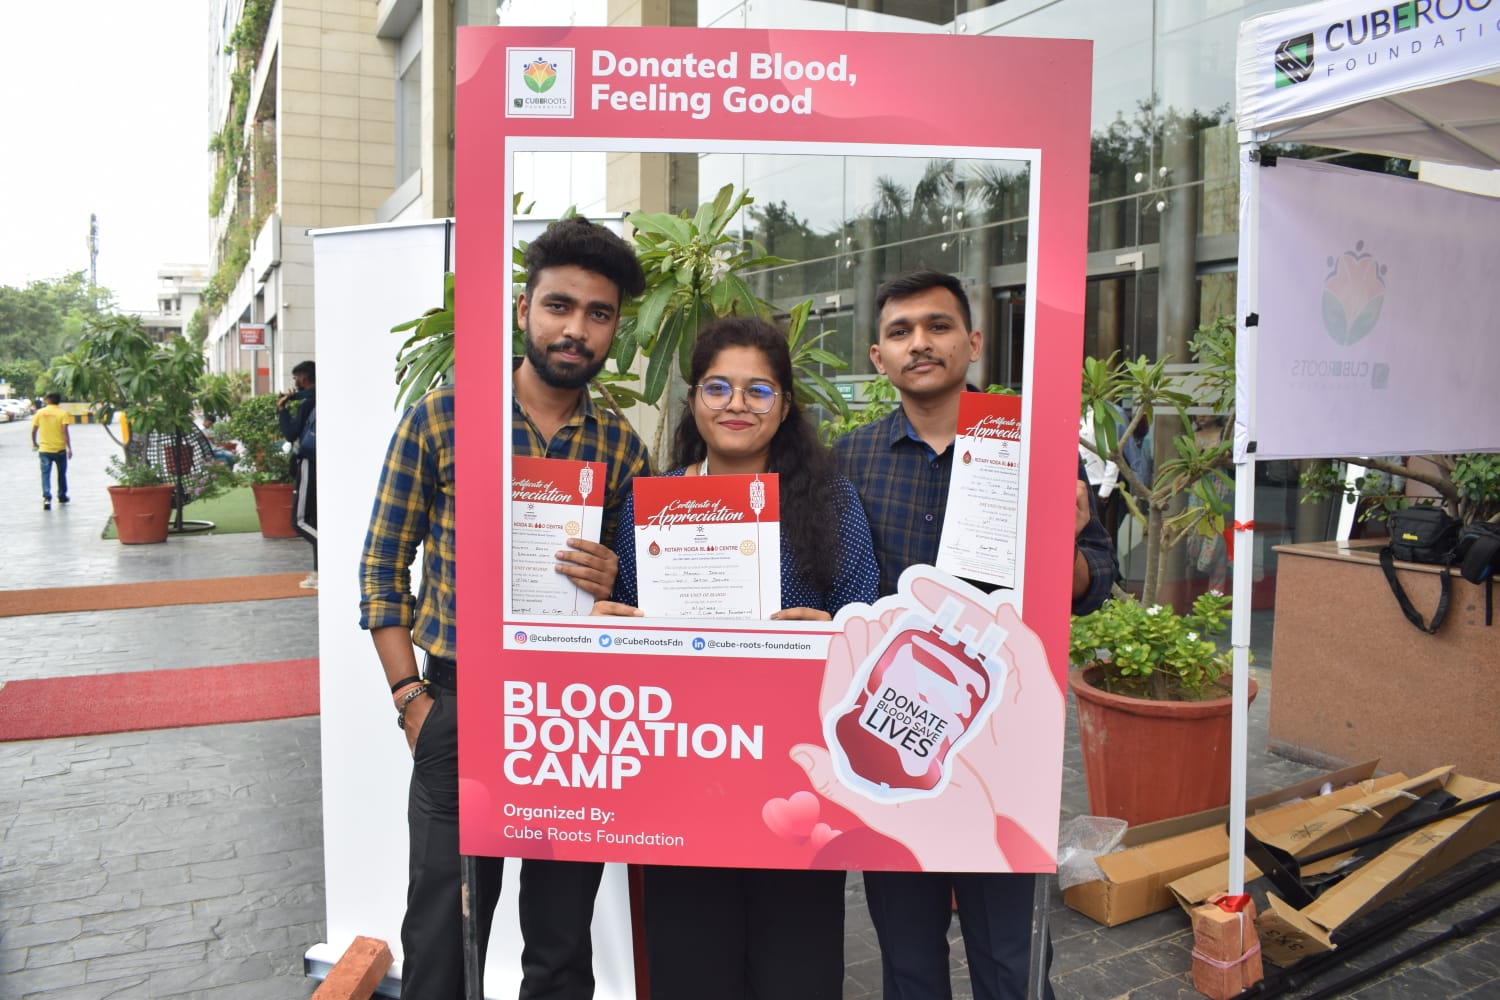 क्यूब रूट्स फाउंडेशन ने तीन-दिवसीय रक्तदान शिविर आयोजित किए, 700 से अधिक लोगों ने किया रक्तदान